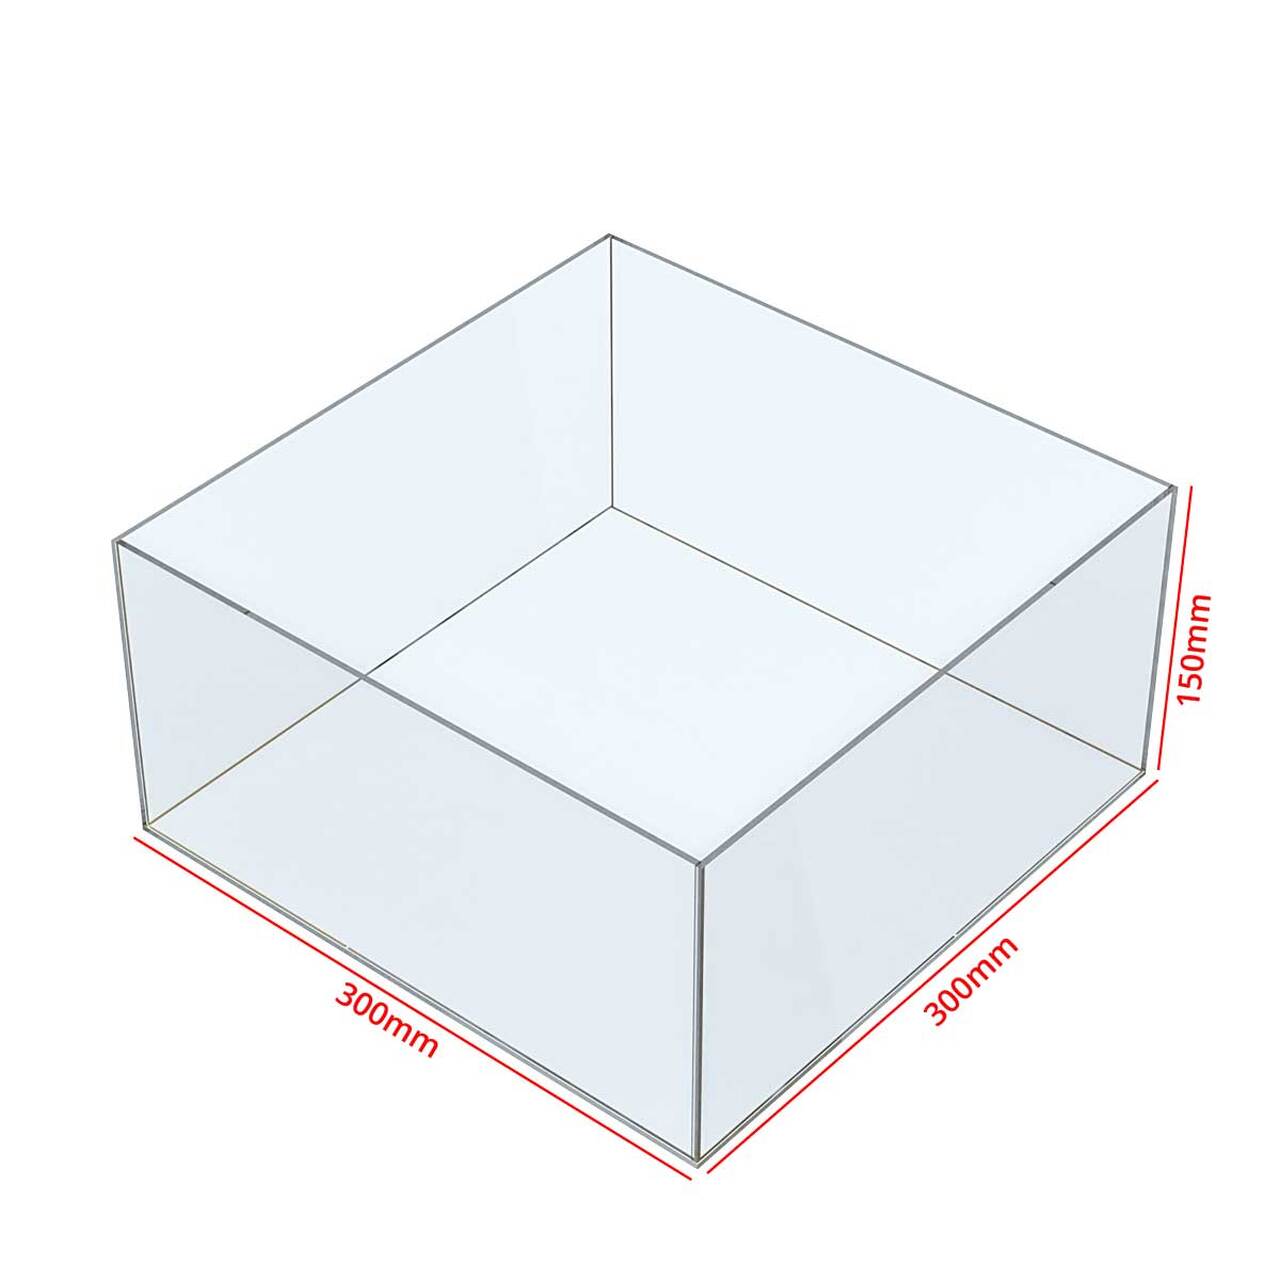 Cutie organizatoare simplă, din plexiglas, format 300x300x150(h)